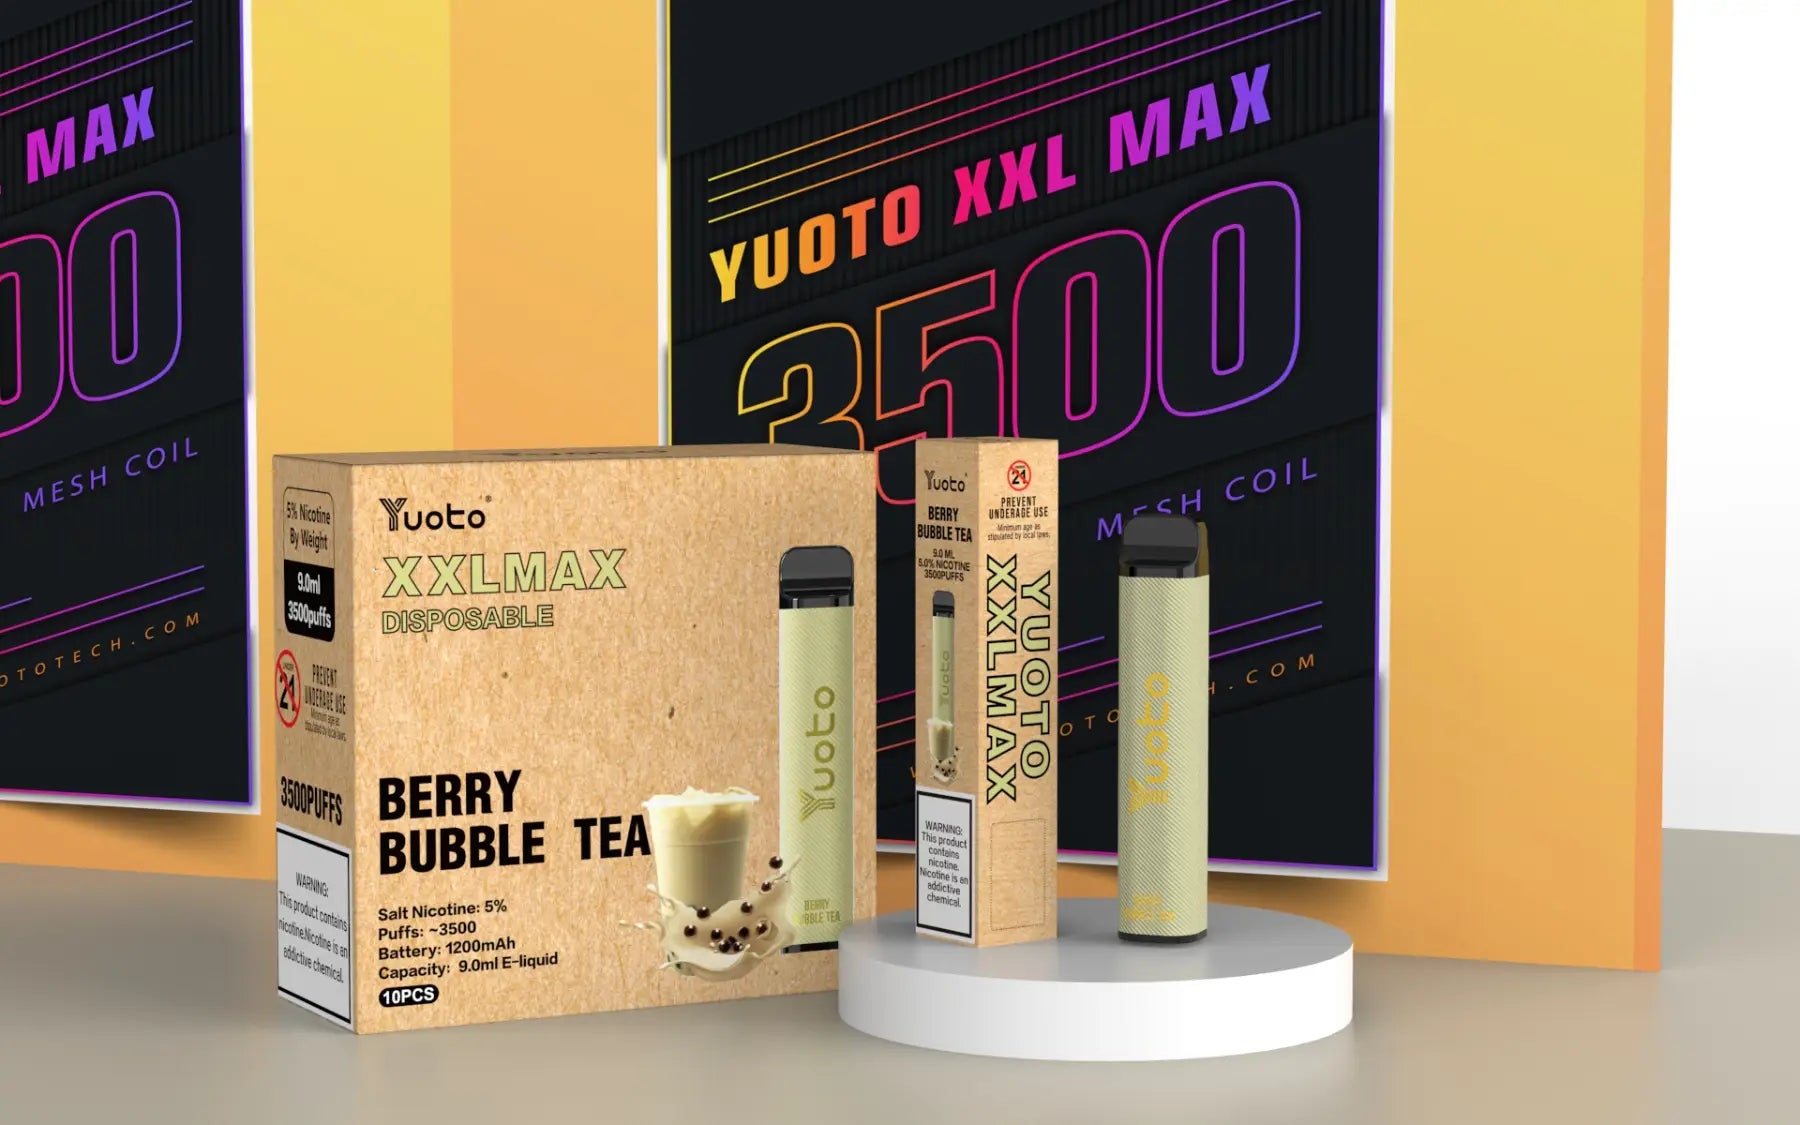 Unna dig en smakupplevelse utöver det vanliga med Yuoto XXL Max Berry Bubble tea! Denna läckra E-cigaretter innehåller hela 9 ml e-juice, vilket räcker länge. Smaken av söta bär och bubblande te ger en spännande och uppfriskande känsla. Dessutom är den enkel att använda och ladda med sin portabla och bekväma design. Beställ din Yuoto XXL Max Berry Bubble tea idag och njut av en härlig vaping-upplevelse.